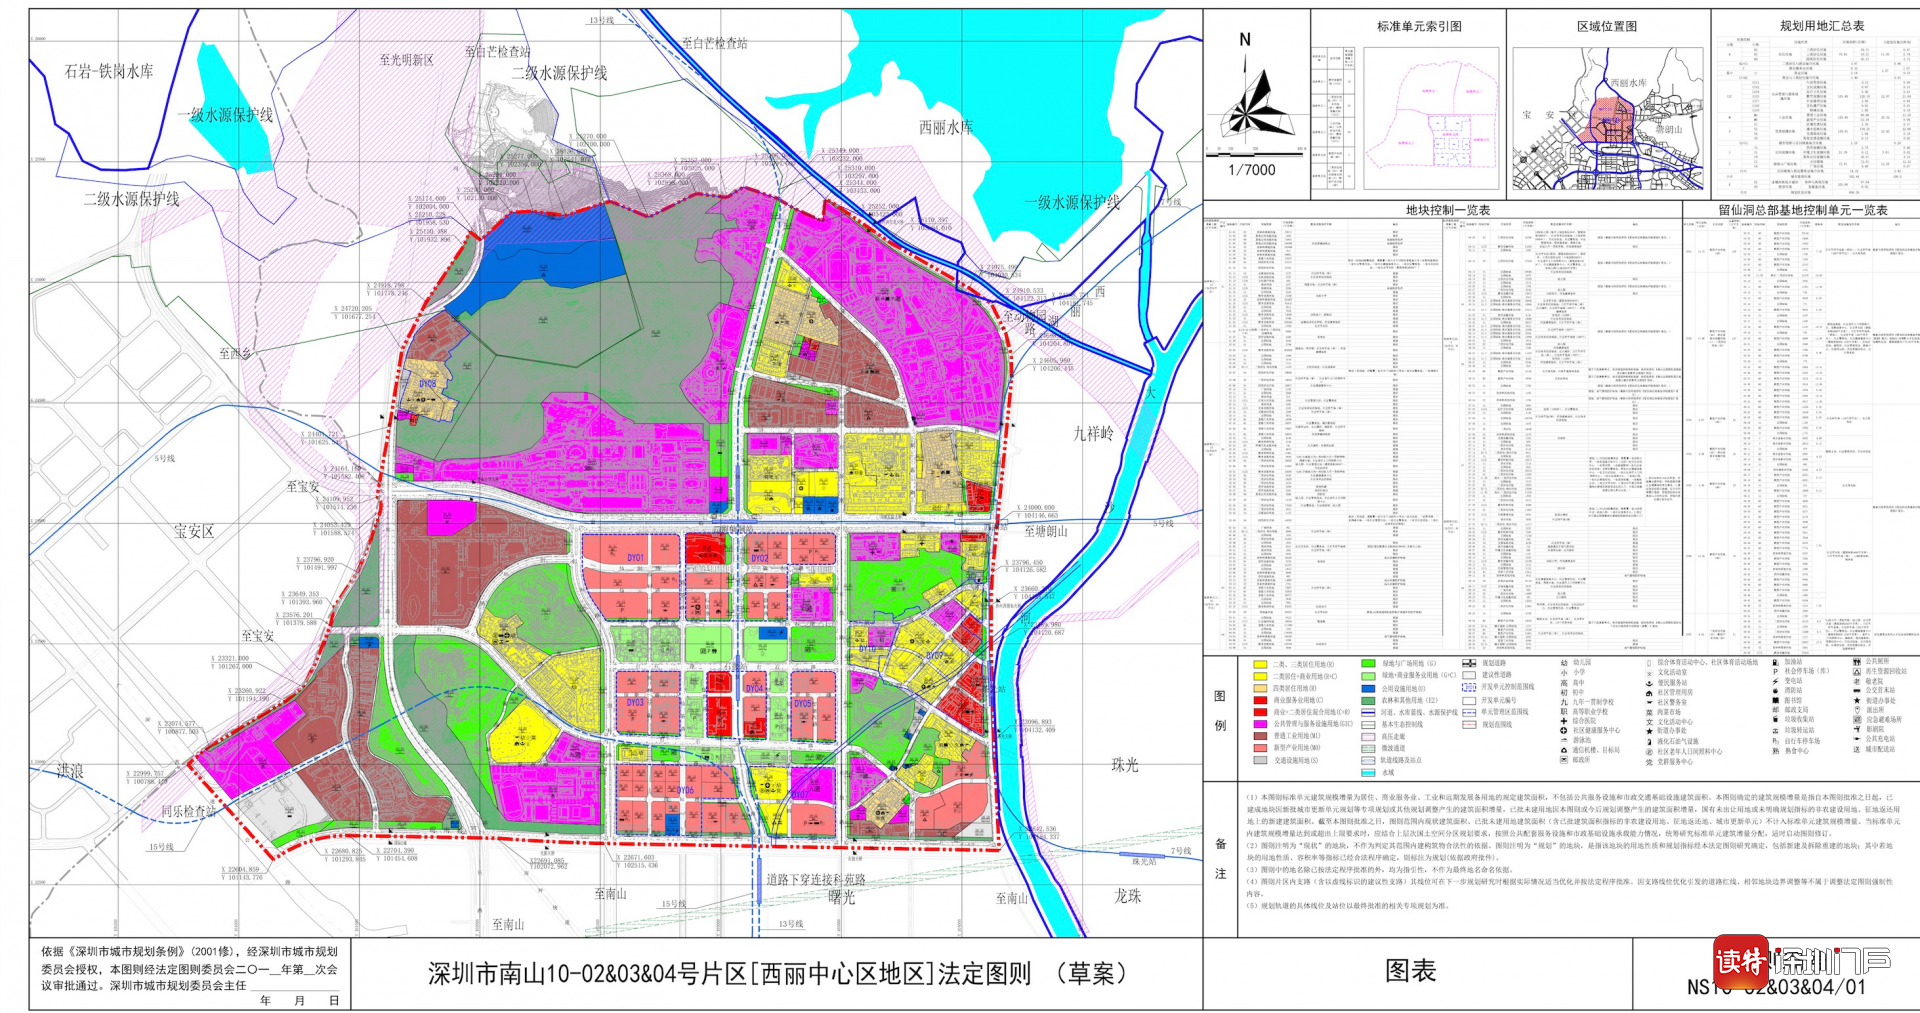 深圳市详细规划一张图公众版的推出,旨在优化营商环境,提升详细规划